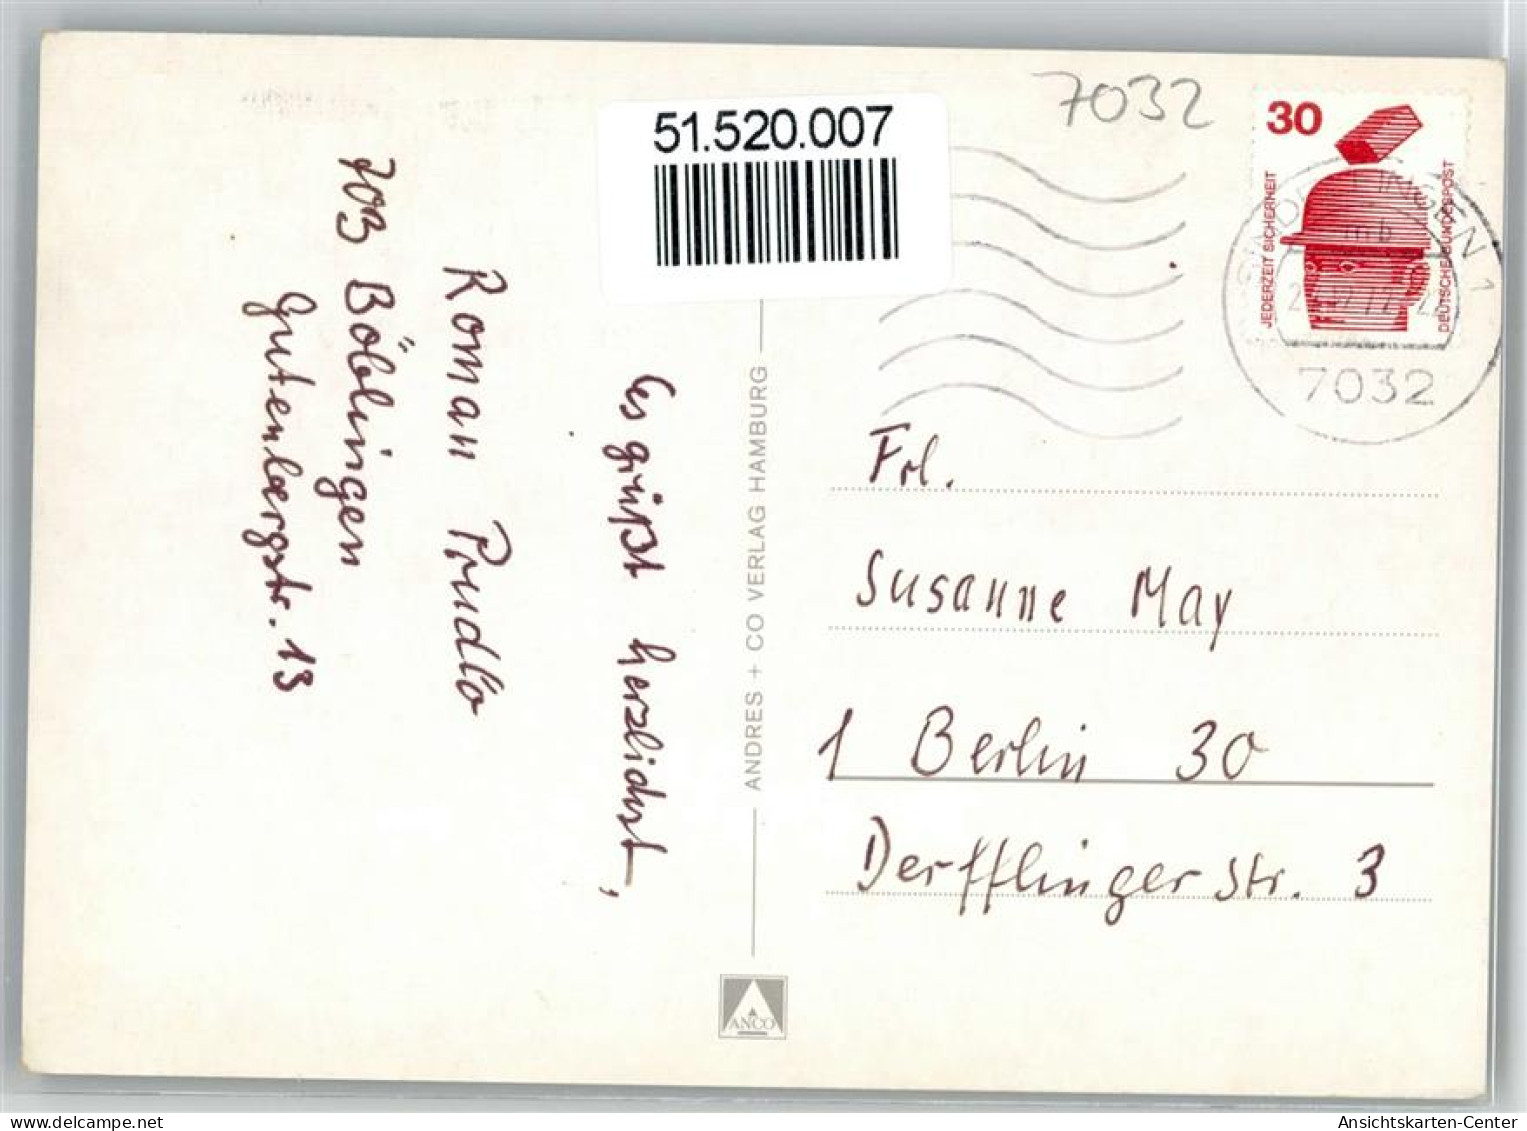 51520007 - Boeblingen - Boeblingen